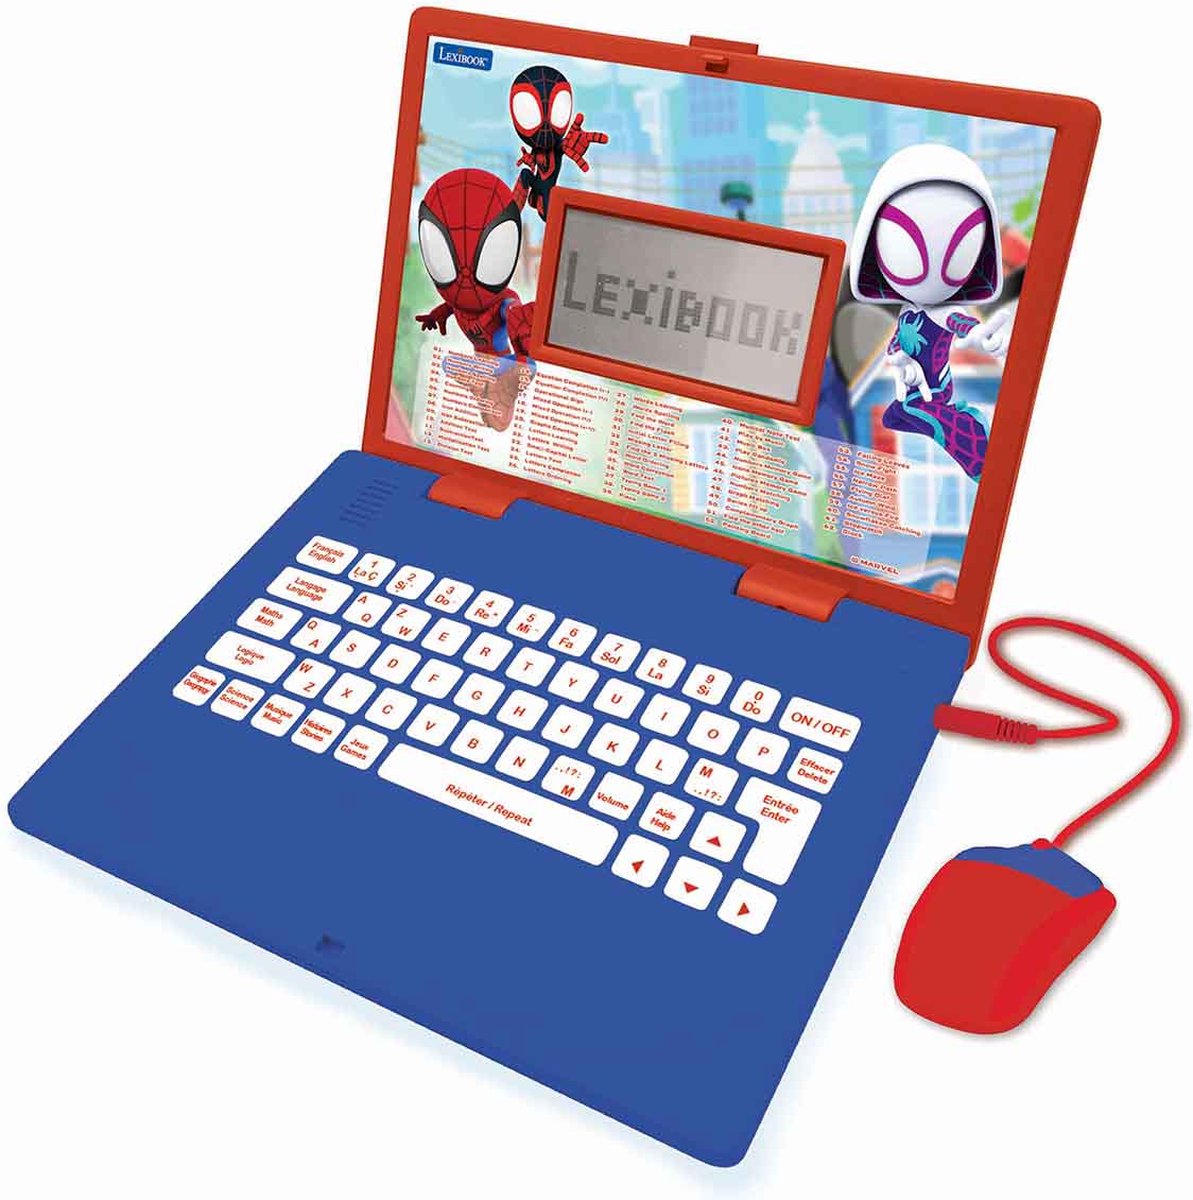 Test de Genio MAX, ordinateur pour enfant - Avis consommateurs